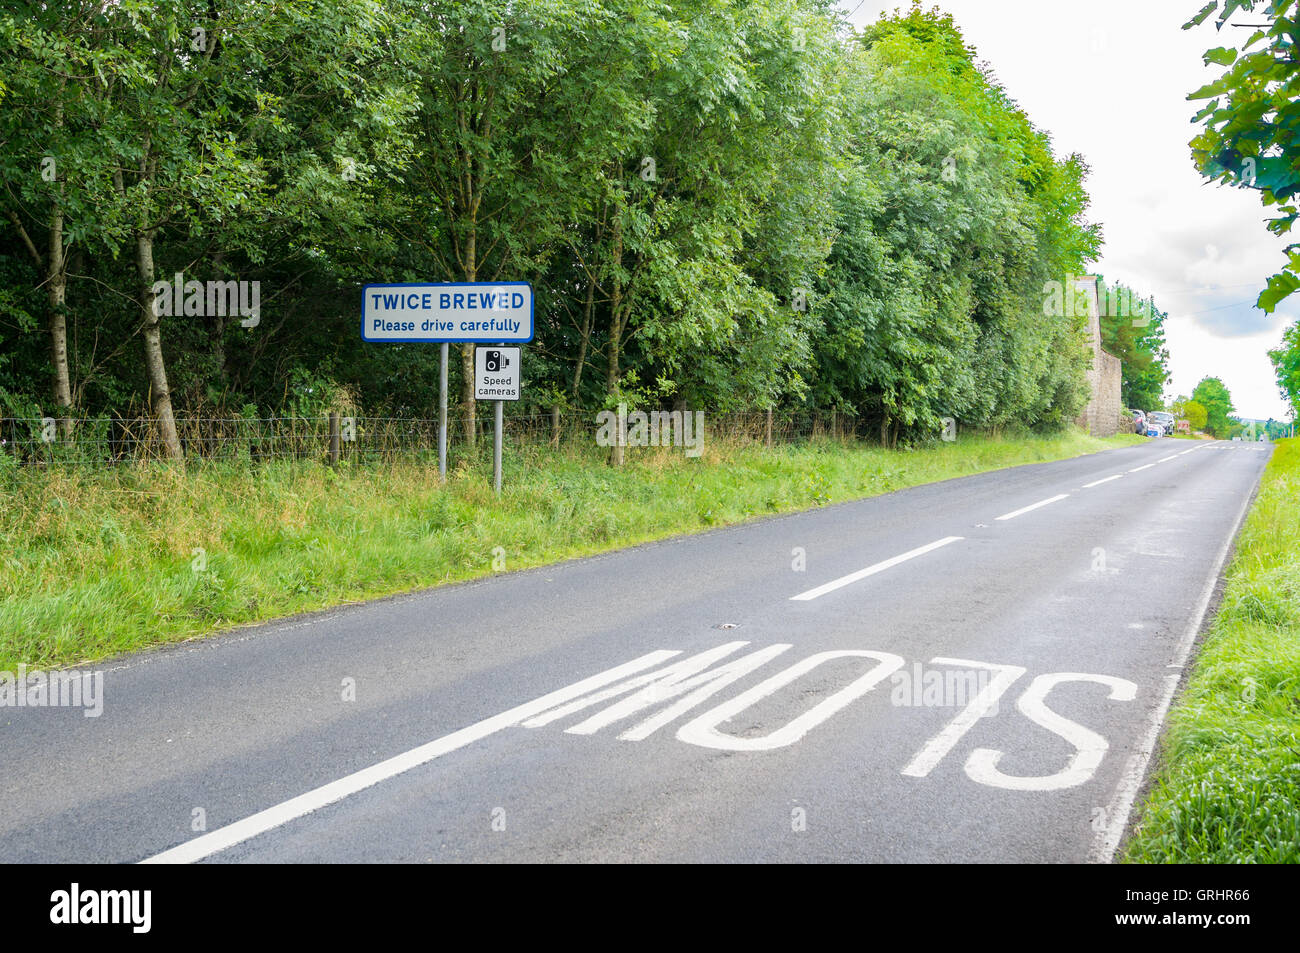 Straße Zeichen, zweimal gebraut, Cumbria, England Stockfoto